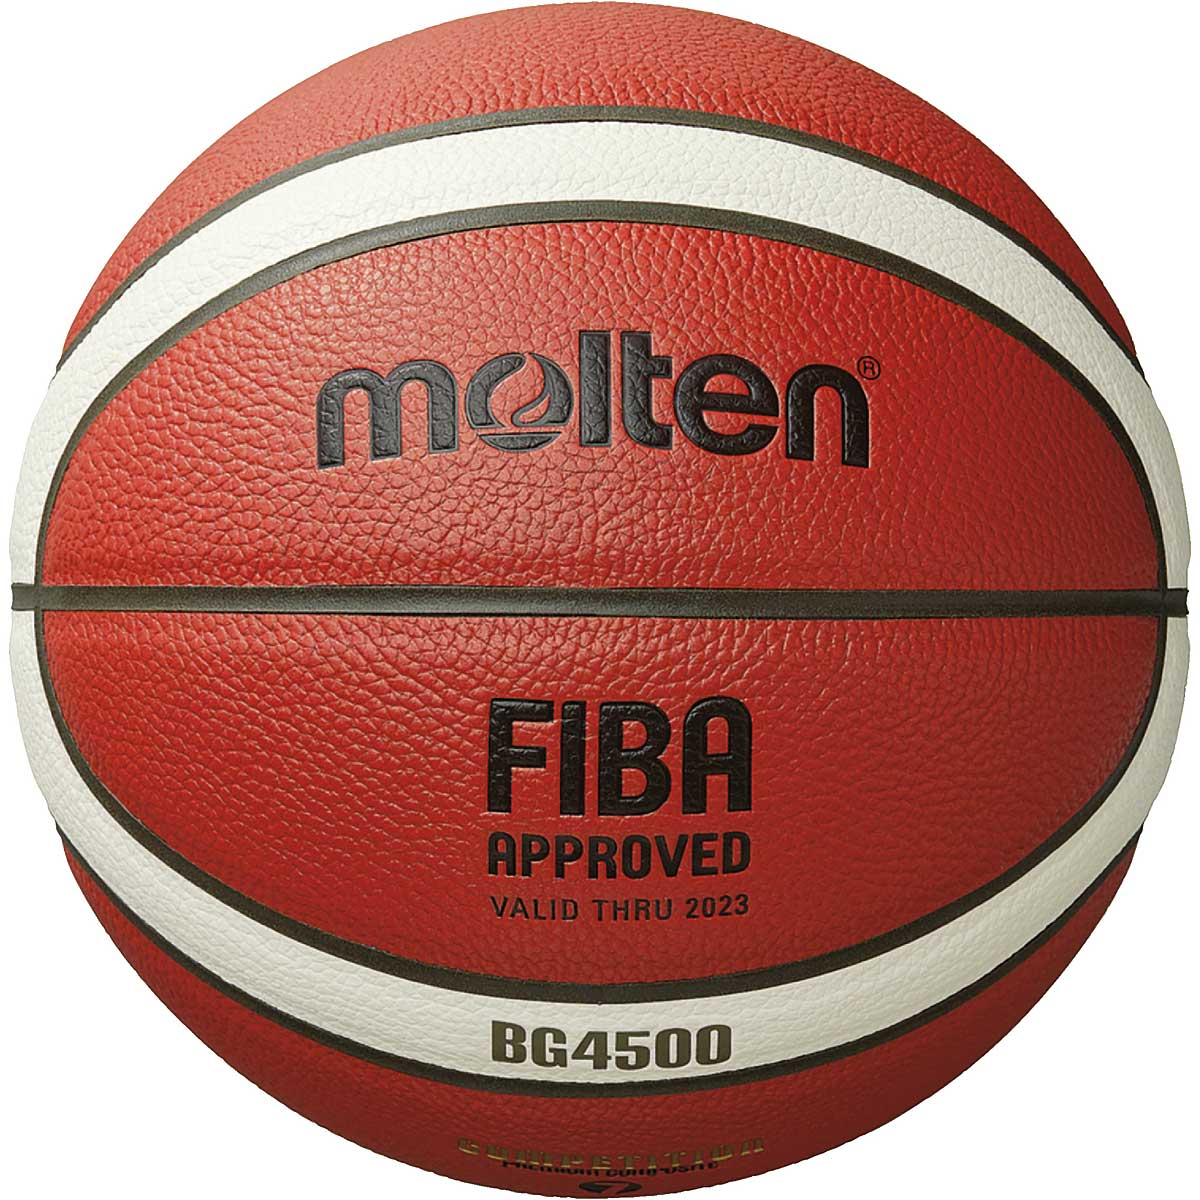 Molten B7G4500-Dbb Indoor Basketball, Orange/Ivory